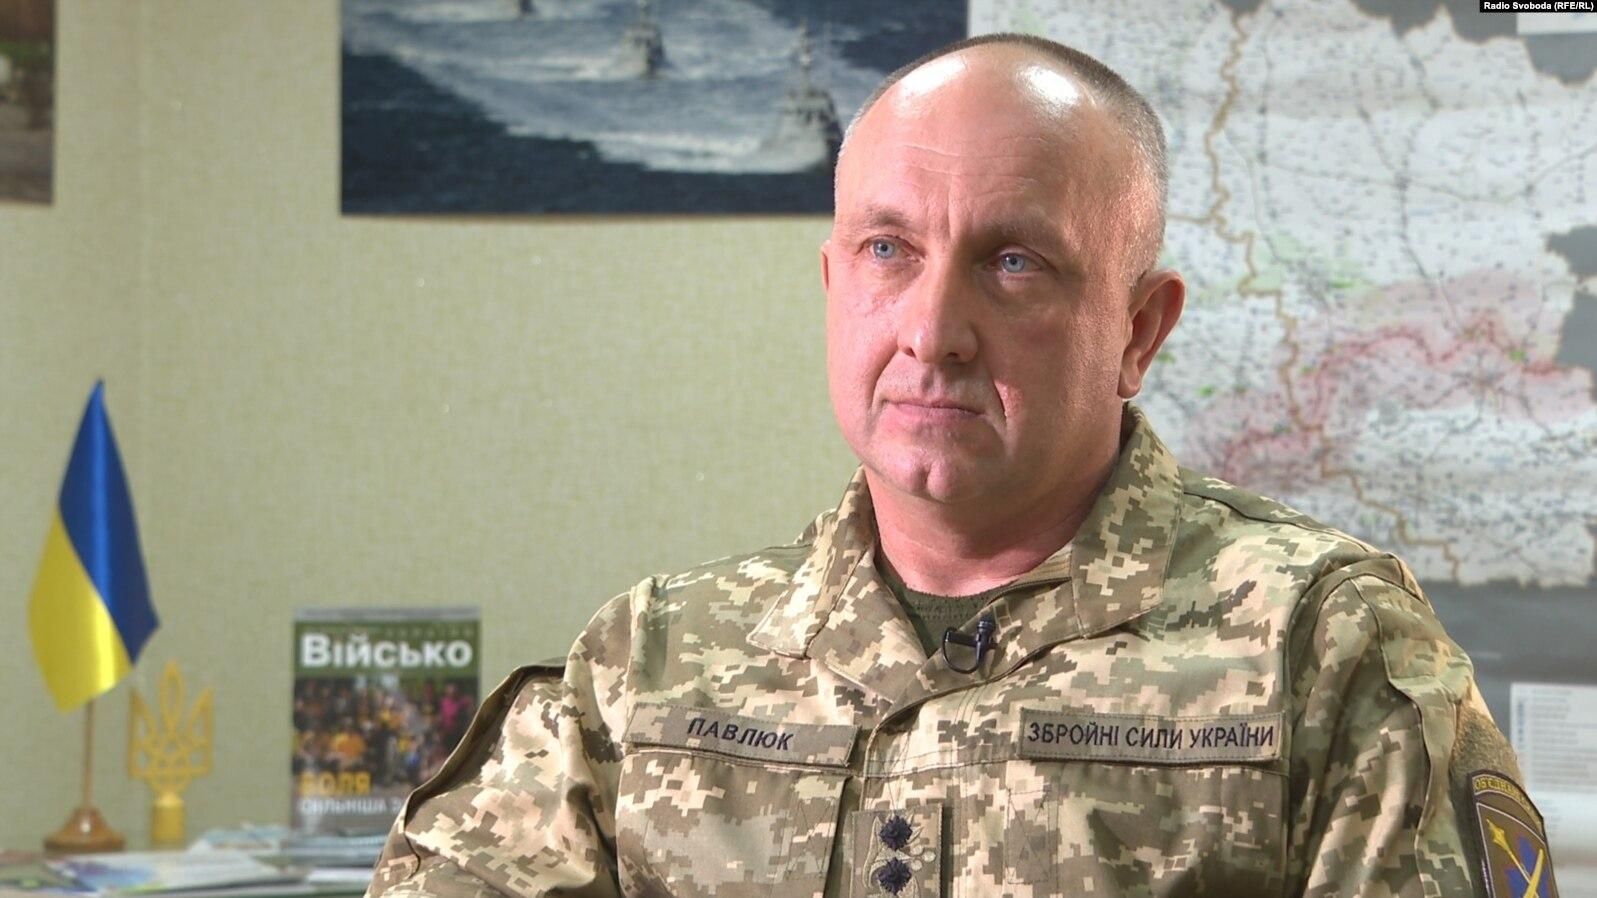 Зберігайте спокій та вірте ЗСУ, – командувач ООС розповів про ситуацію на Донбасі - Термінові новини - 24 Канал